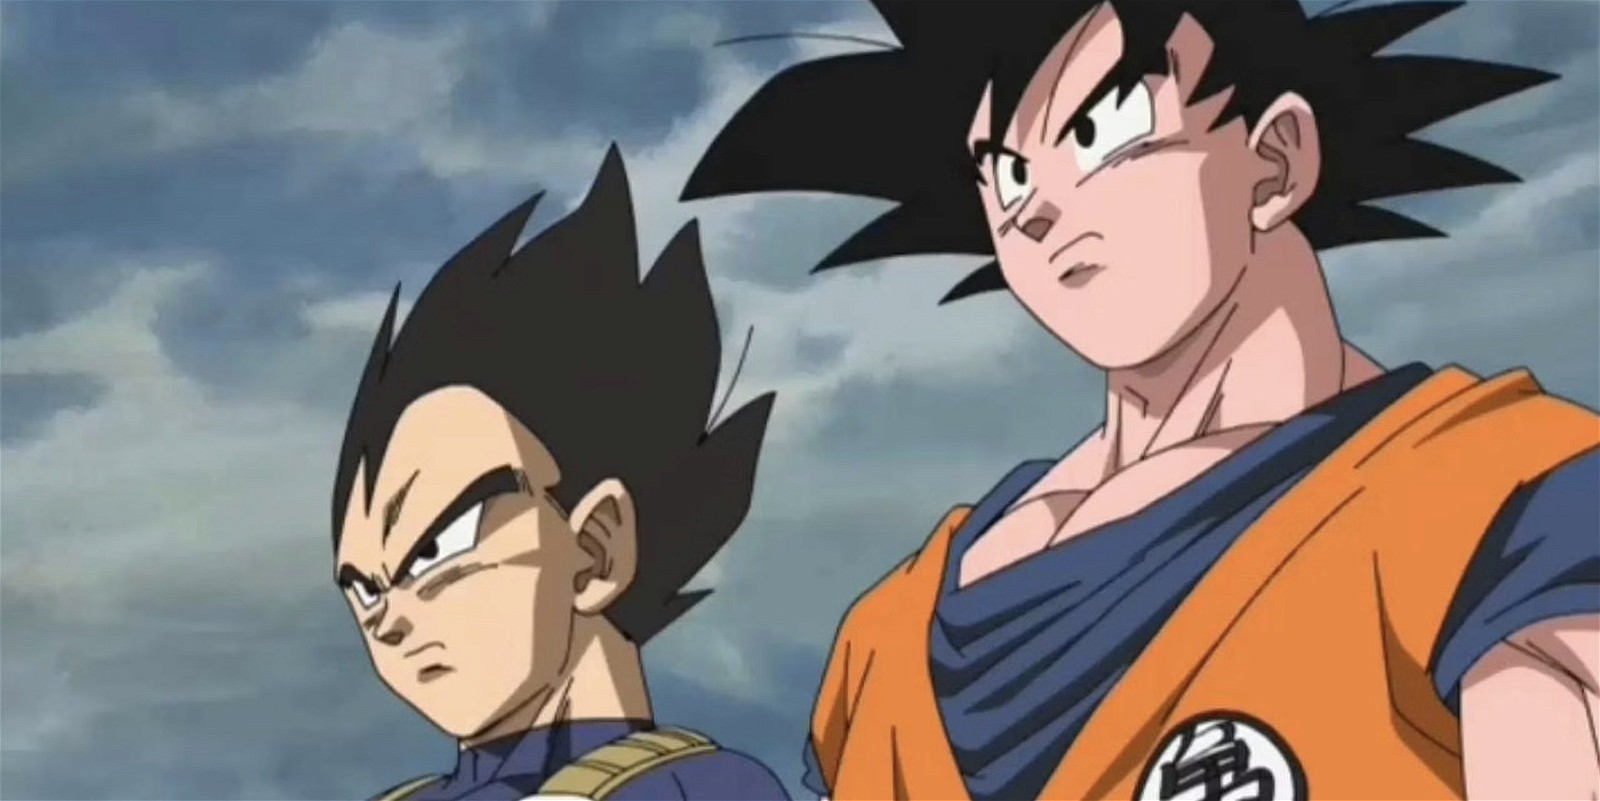 Goku and Vegeta in Dragon Ball